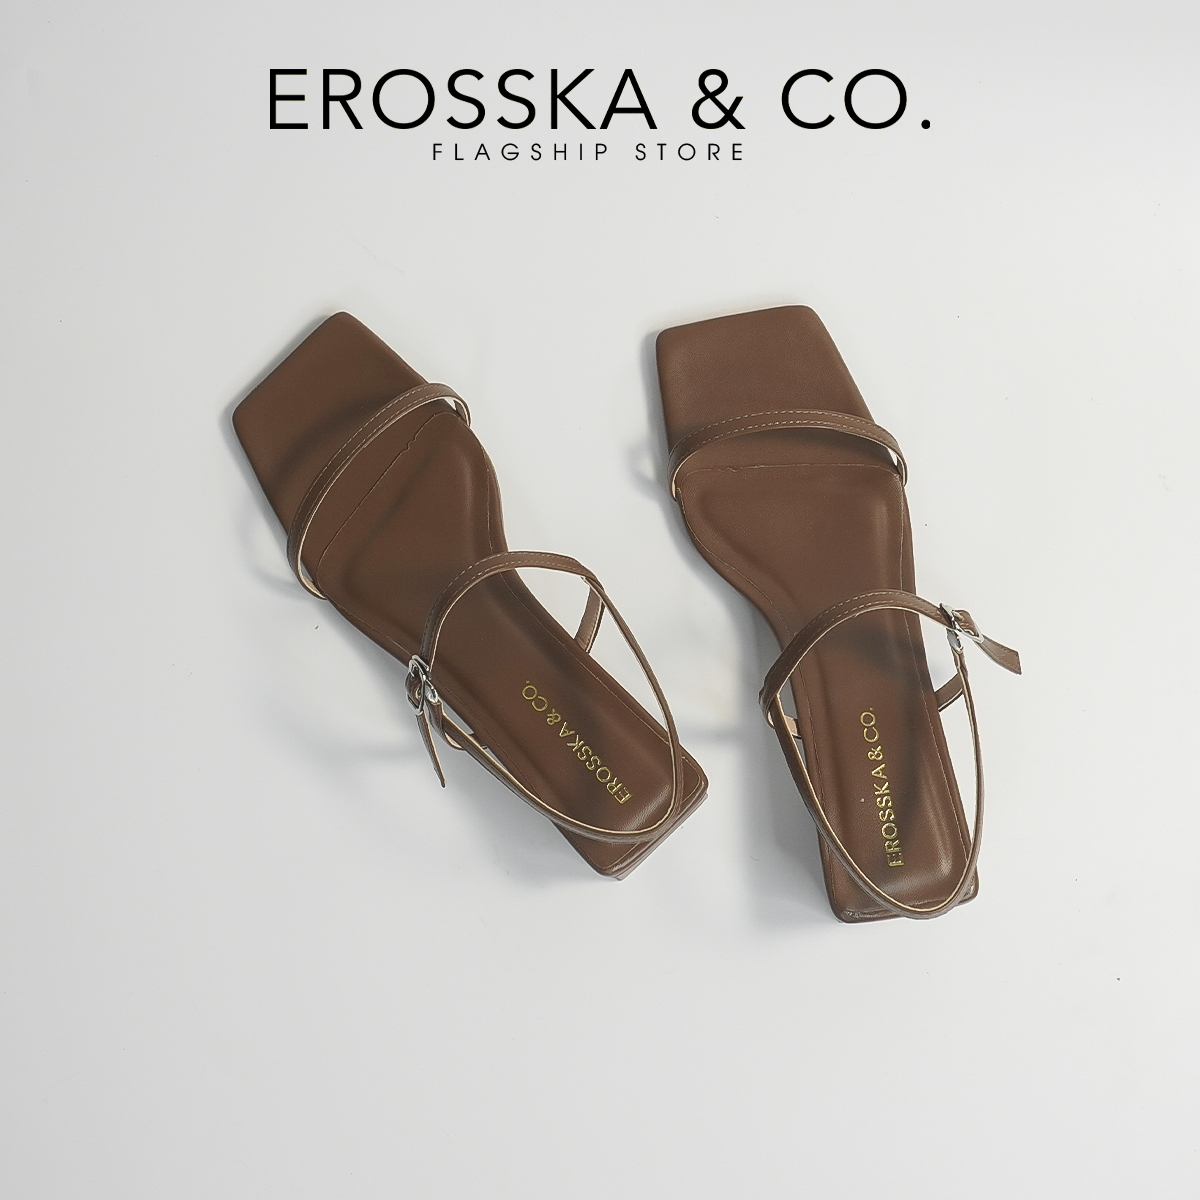 Erosska - Giày sandal cao gót phối dây kiểu dáng Hàn Quốc cao 4cm màu đen _ EM079